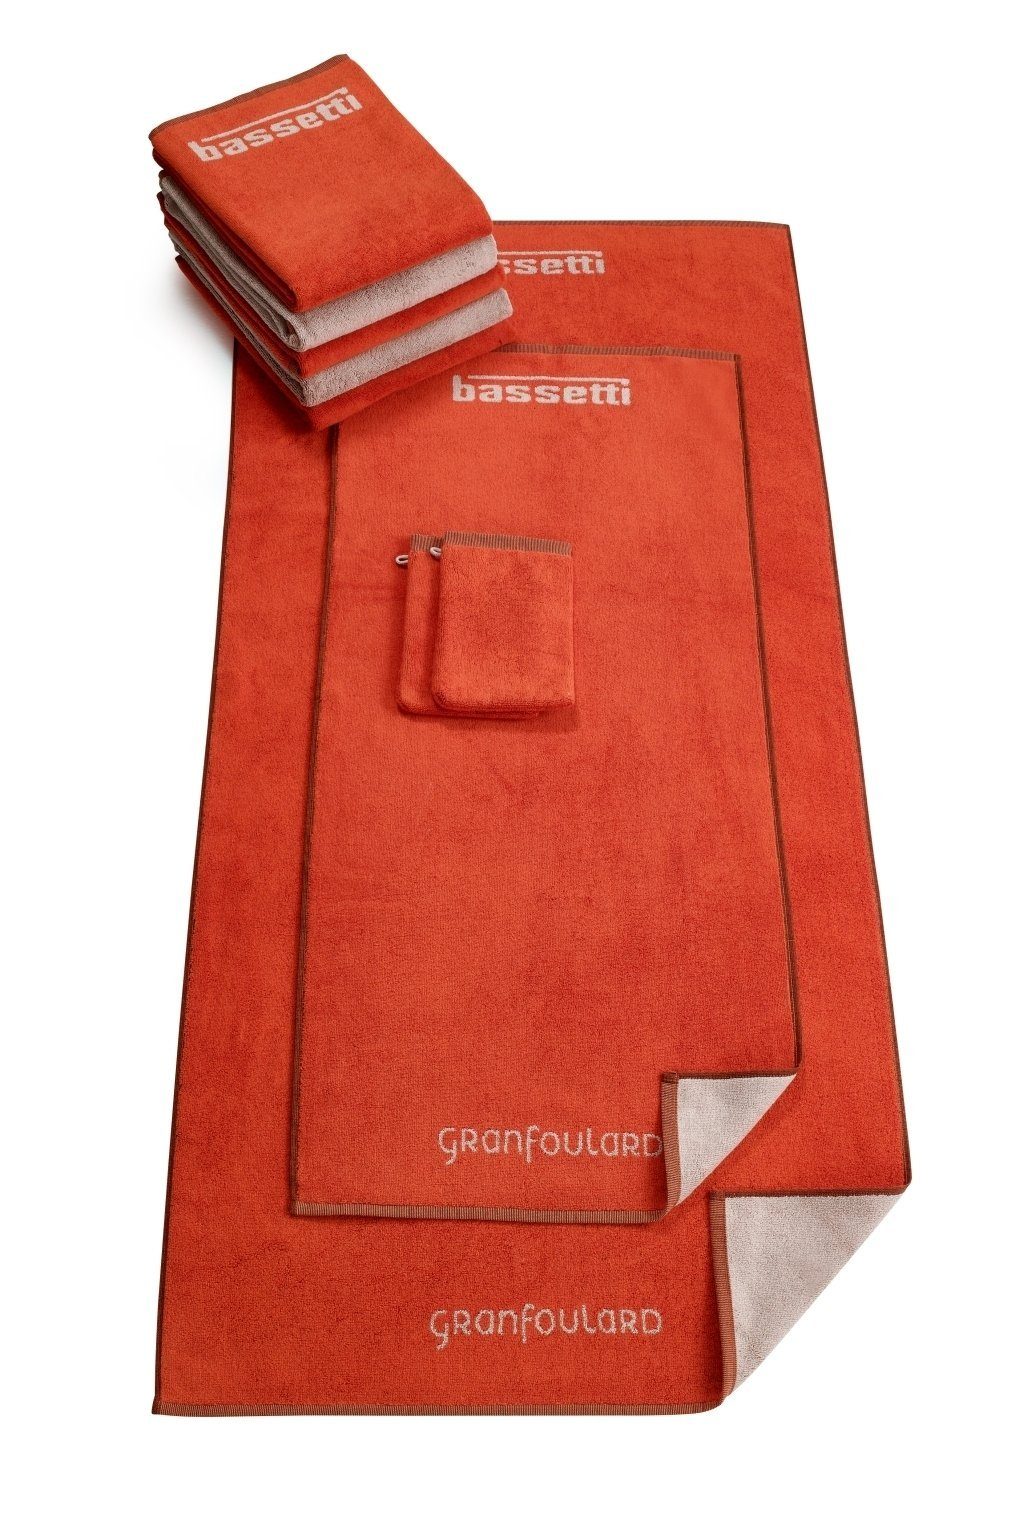 Bassetti Waschhandschuh Wendedesign SHADES, orange mit